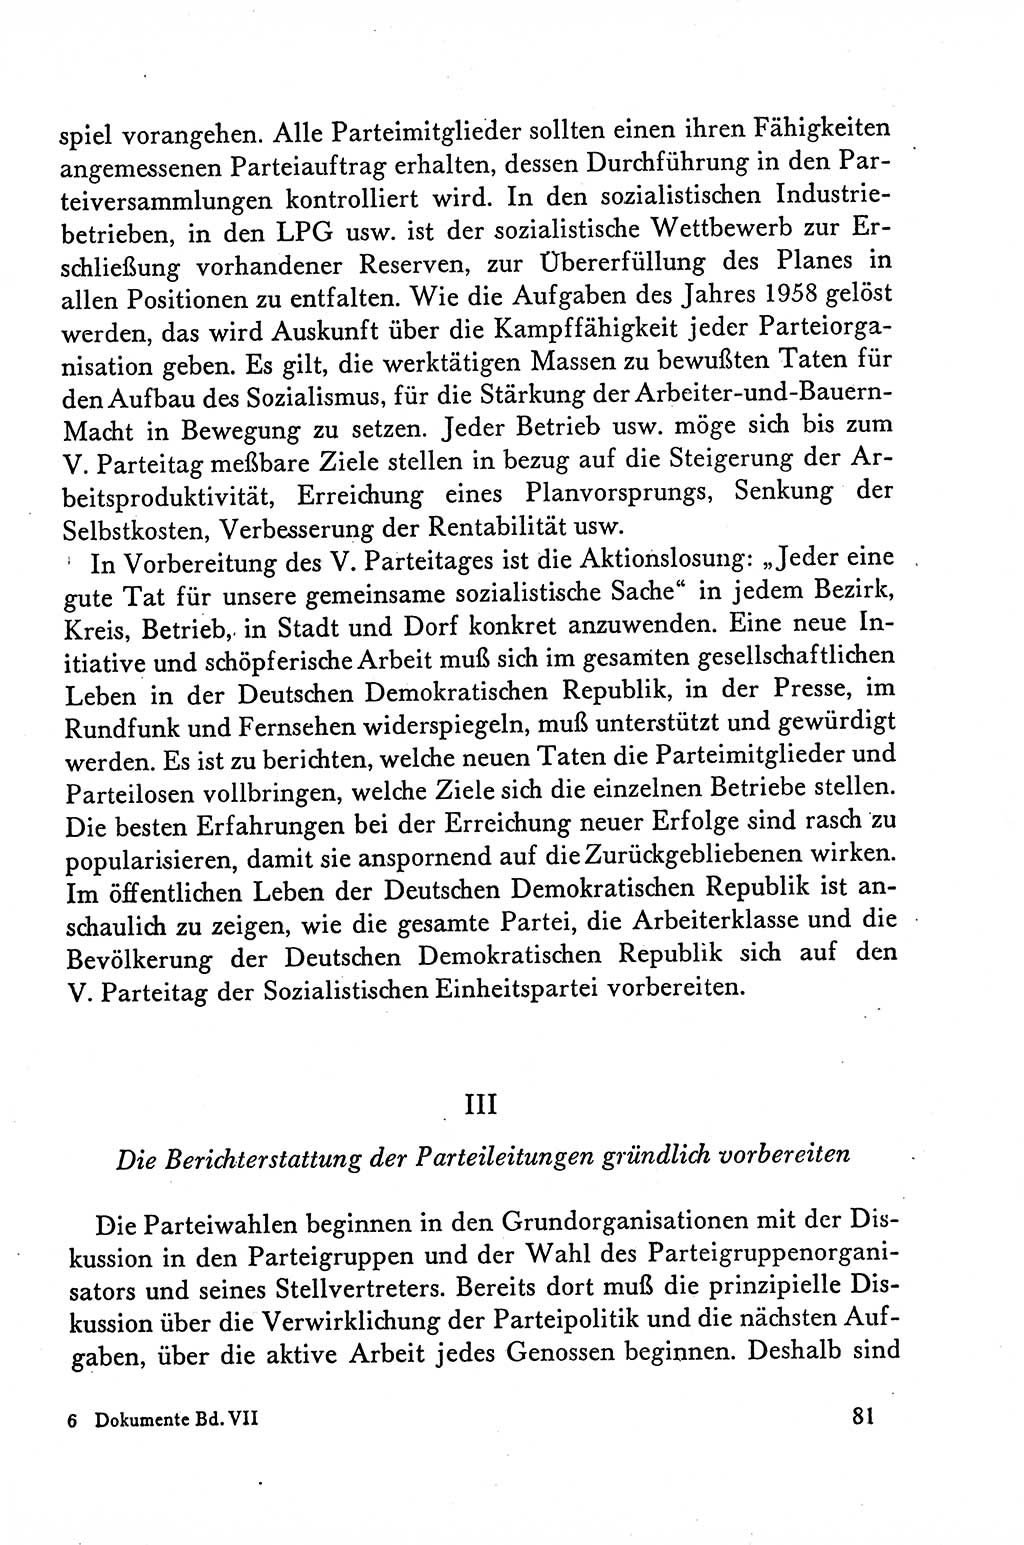 Dokumente der Sozialistischen Einheitspartei Deutschlands (SED) [Deutsche Demokratische Republik (DDR)] 1958-1959, Seite 81 (Dok. SED DDR 1958-1959, S. 81)